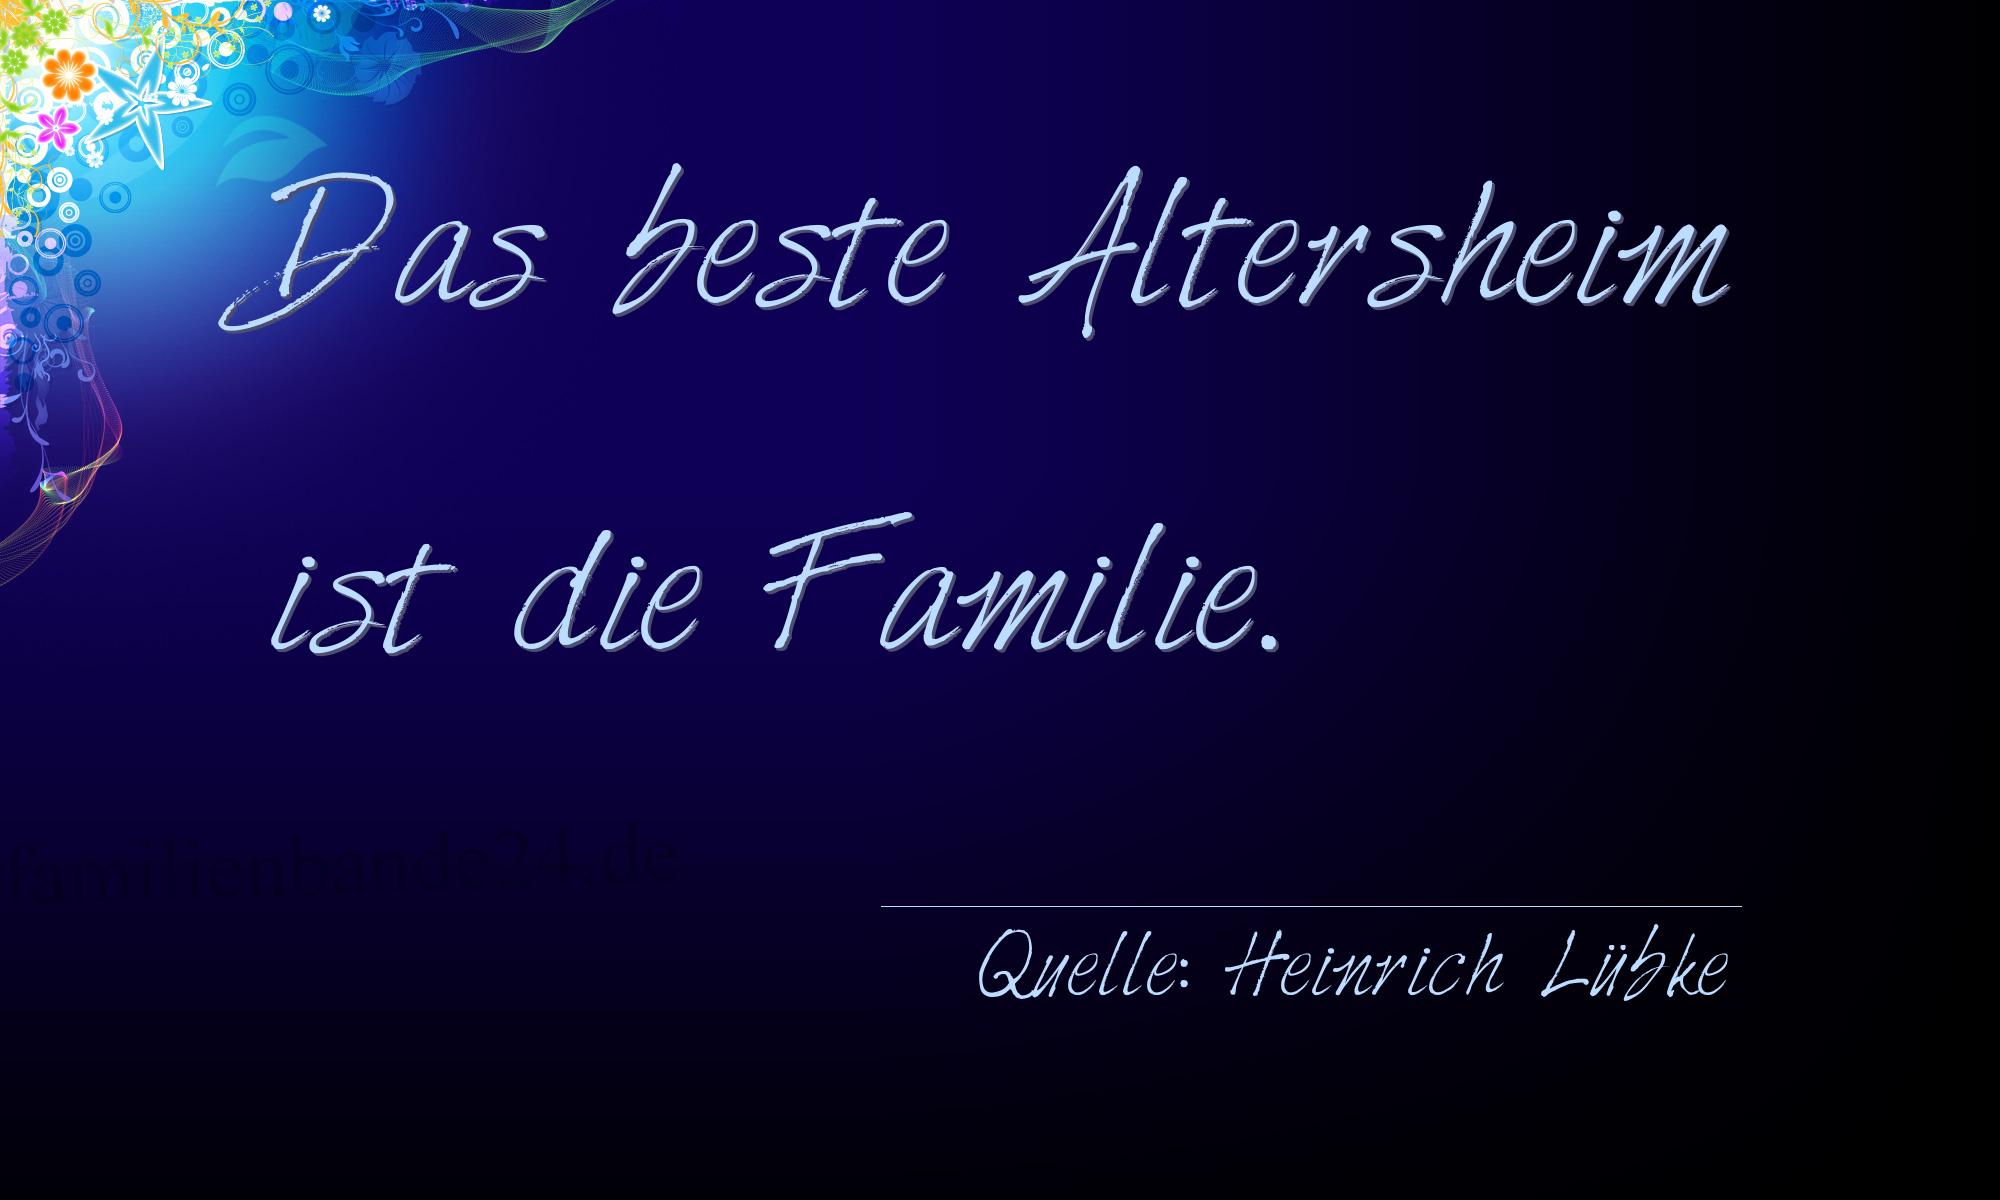 Spruch Nummer 318 (von Heinrich Lübke (Deutscher Bundespräsident)): Das beste Altersheim ist die Familie. 